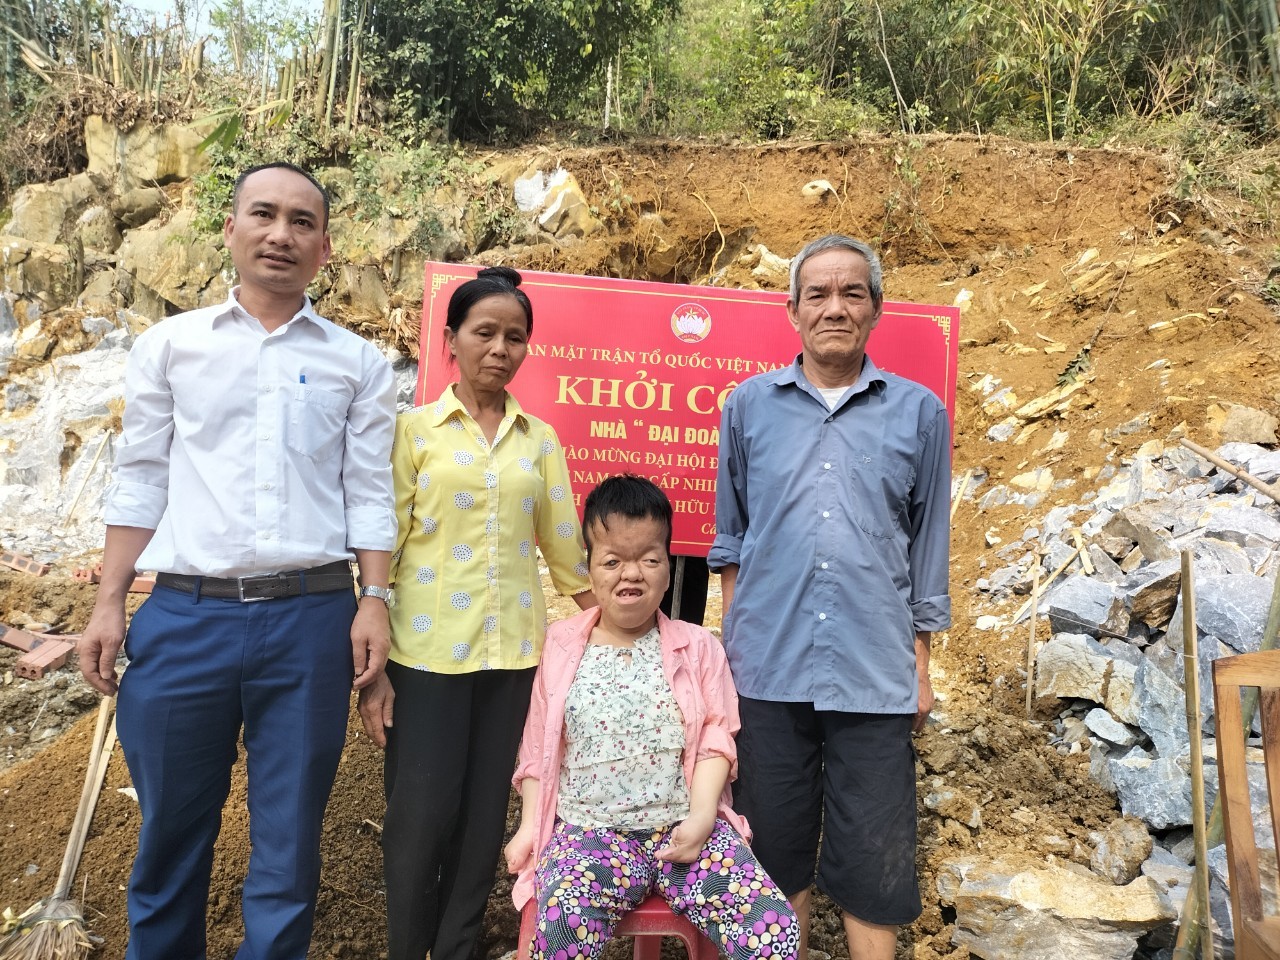 Uỷ ban MTTQ xã Cấp Tiến (Sơn Dương) phối hợp khởi công xây dựng nhà đại đoàn kết cho hộ nghèo